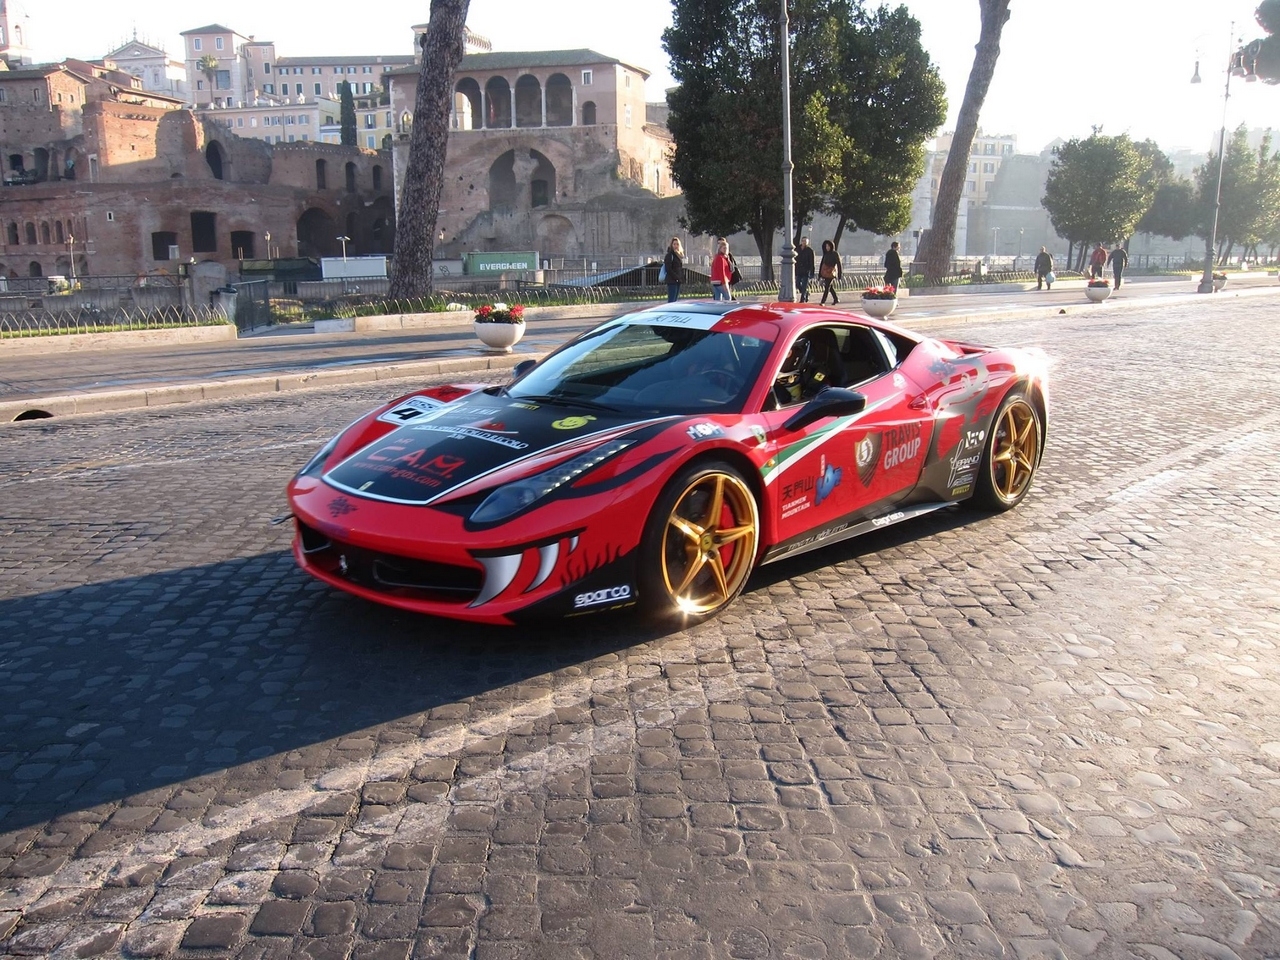 Pit-stop Ferrari all’ombra del Colosseo